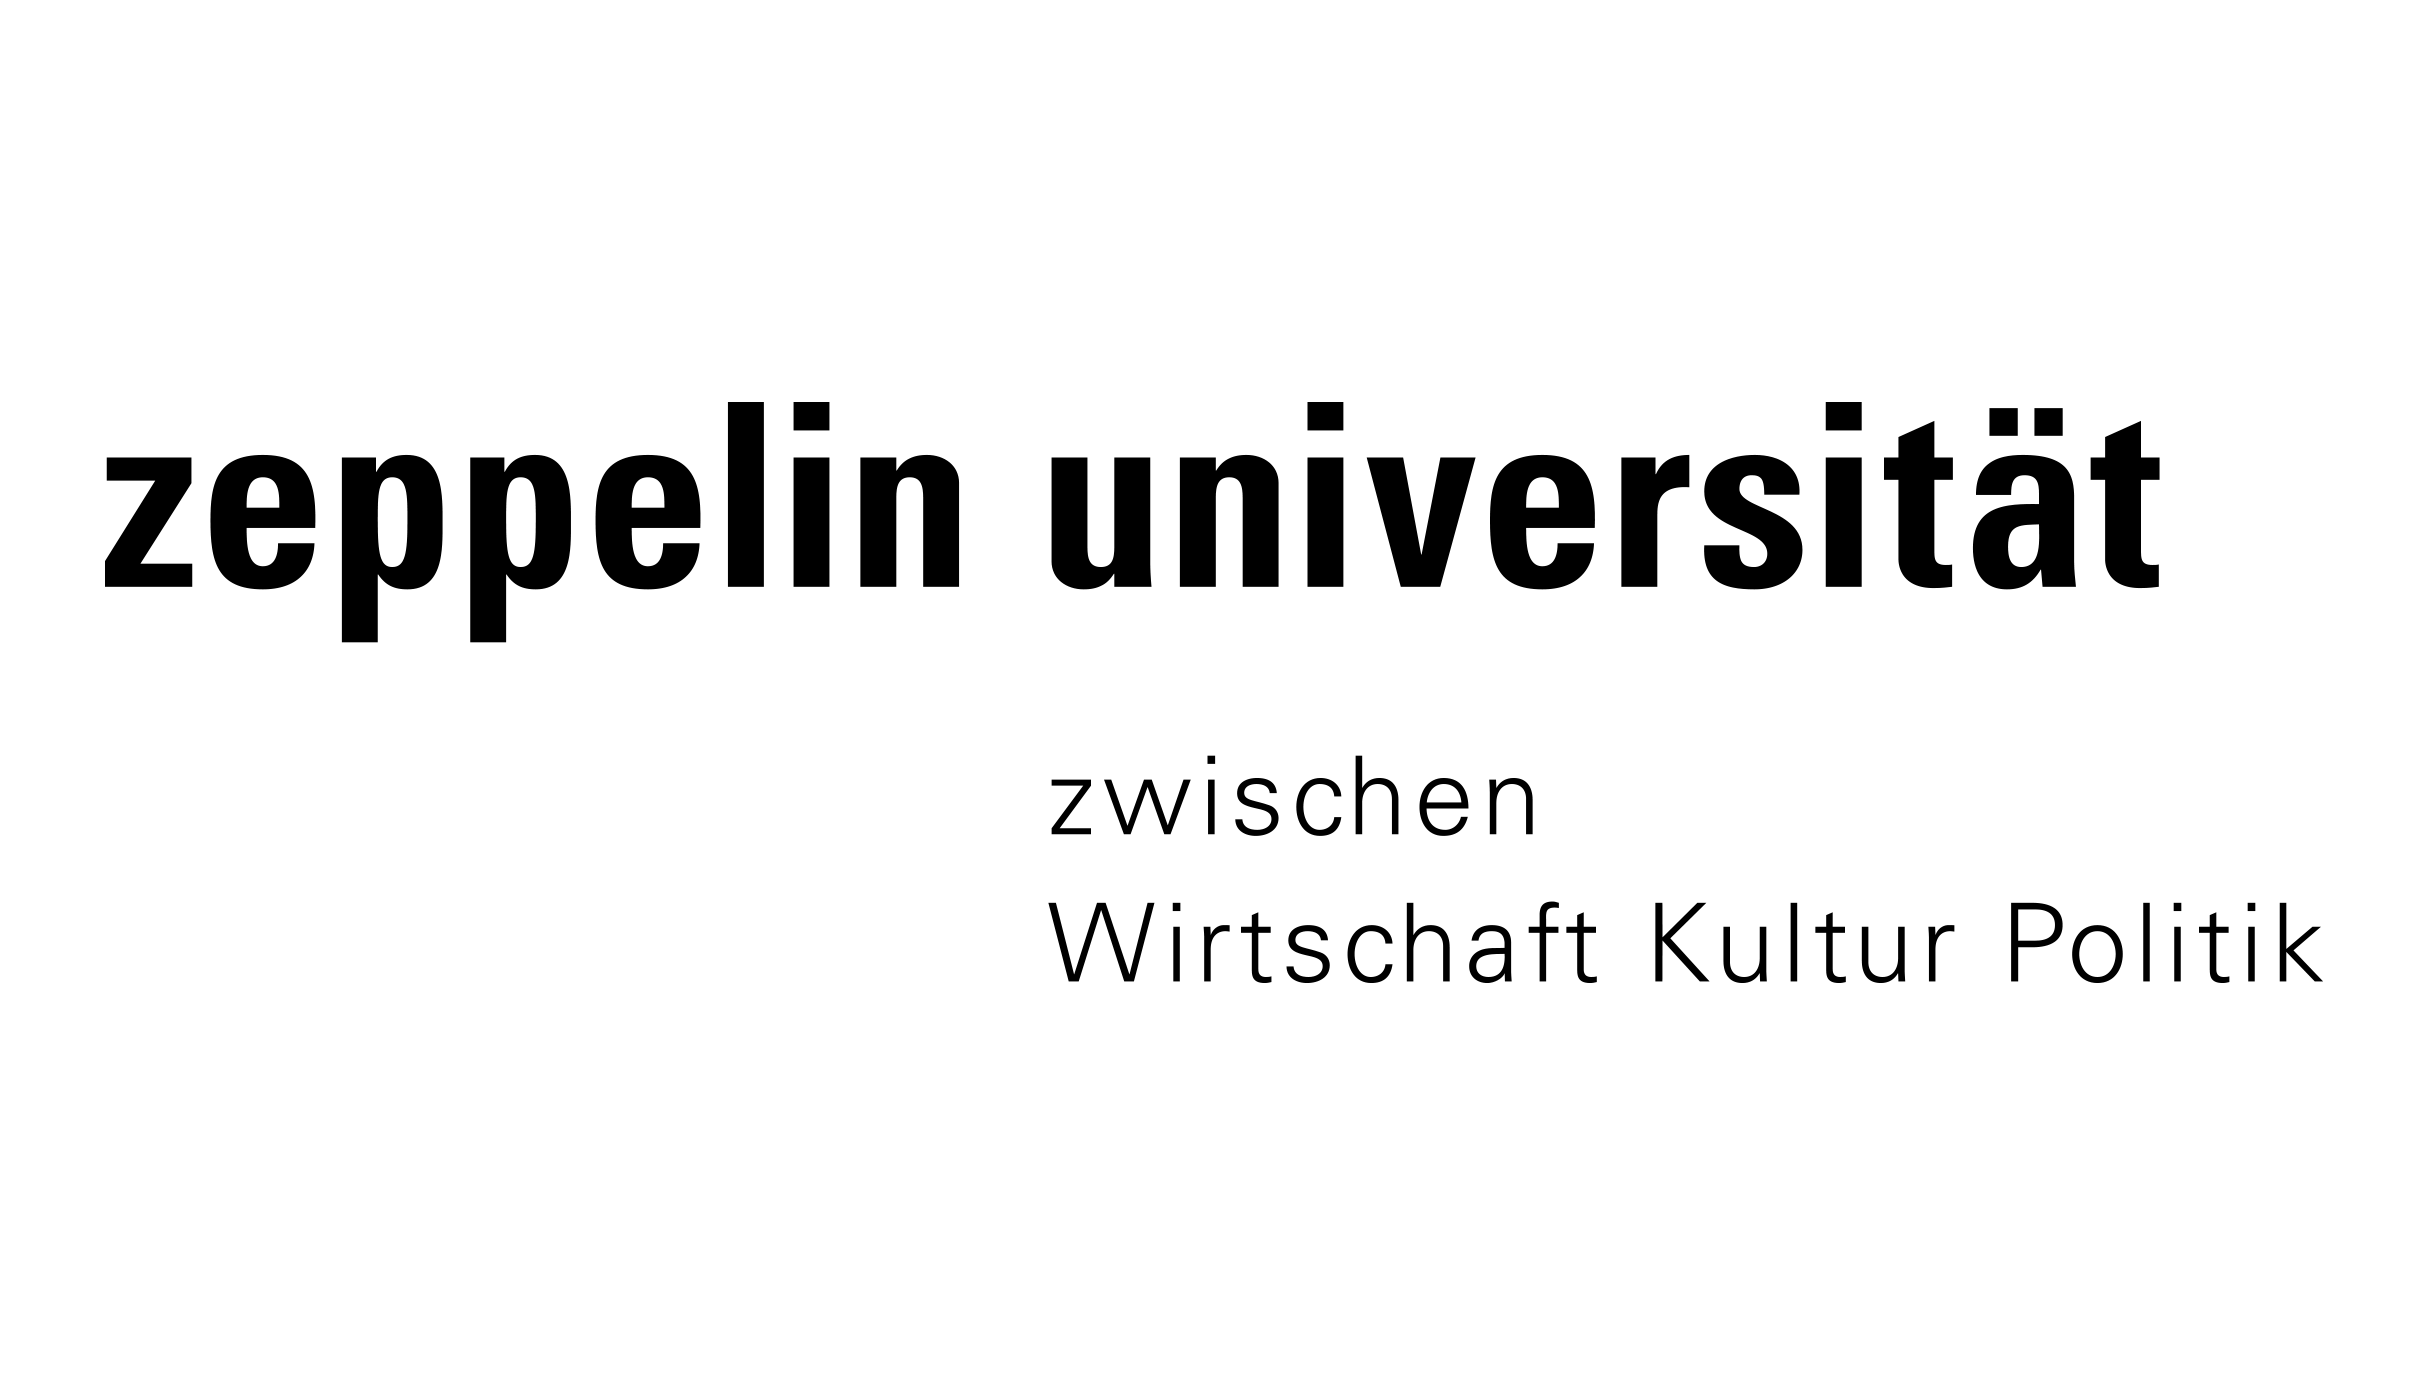 Logo der Zeppelin Universität.